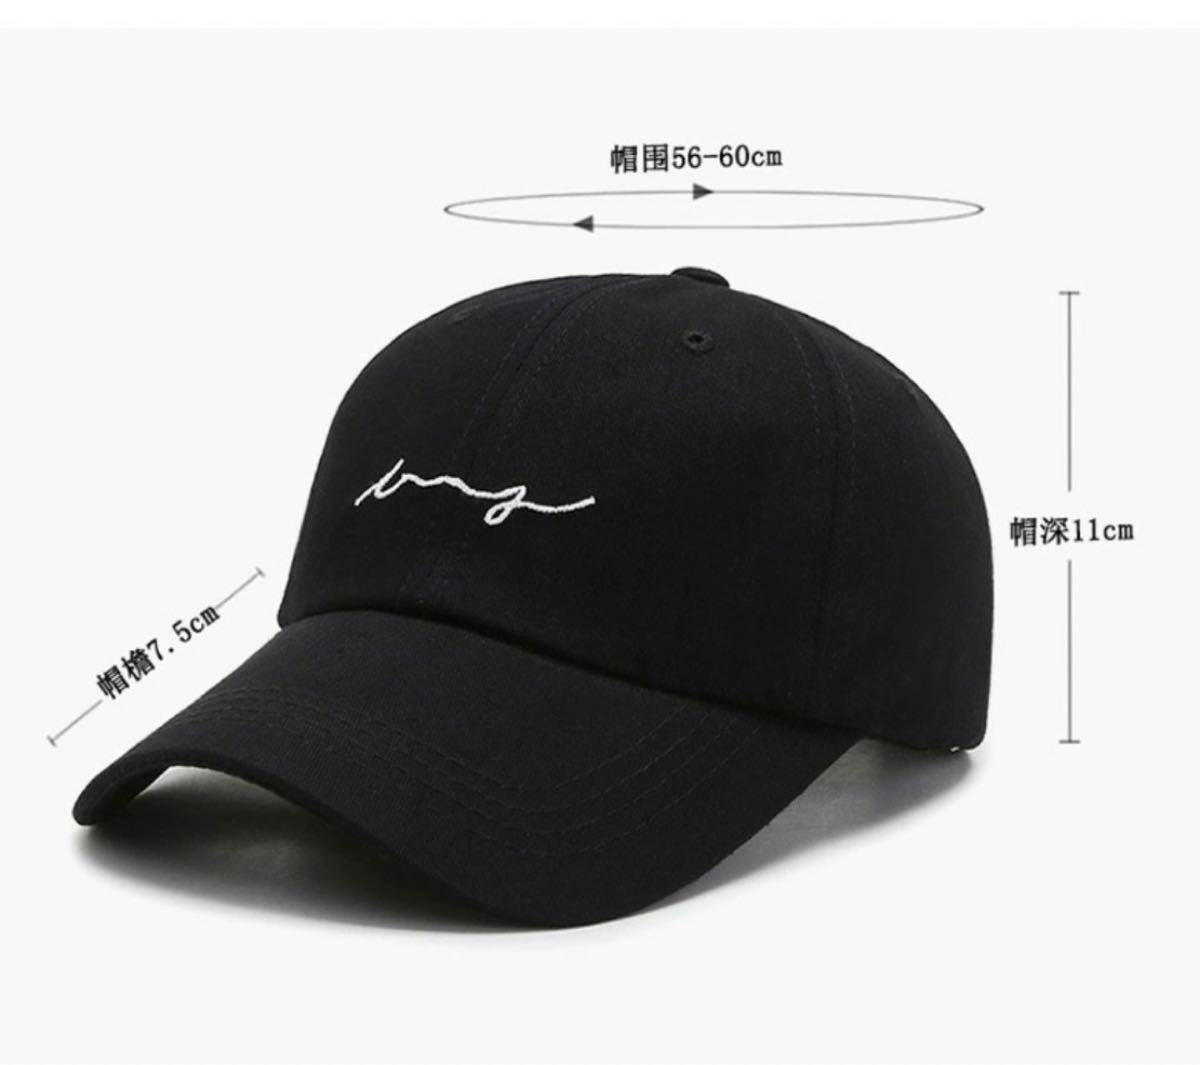 メンズ レディース キャップ 帽子 韓国 ロゴ つばブラック 黒 英字